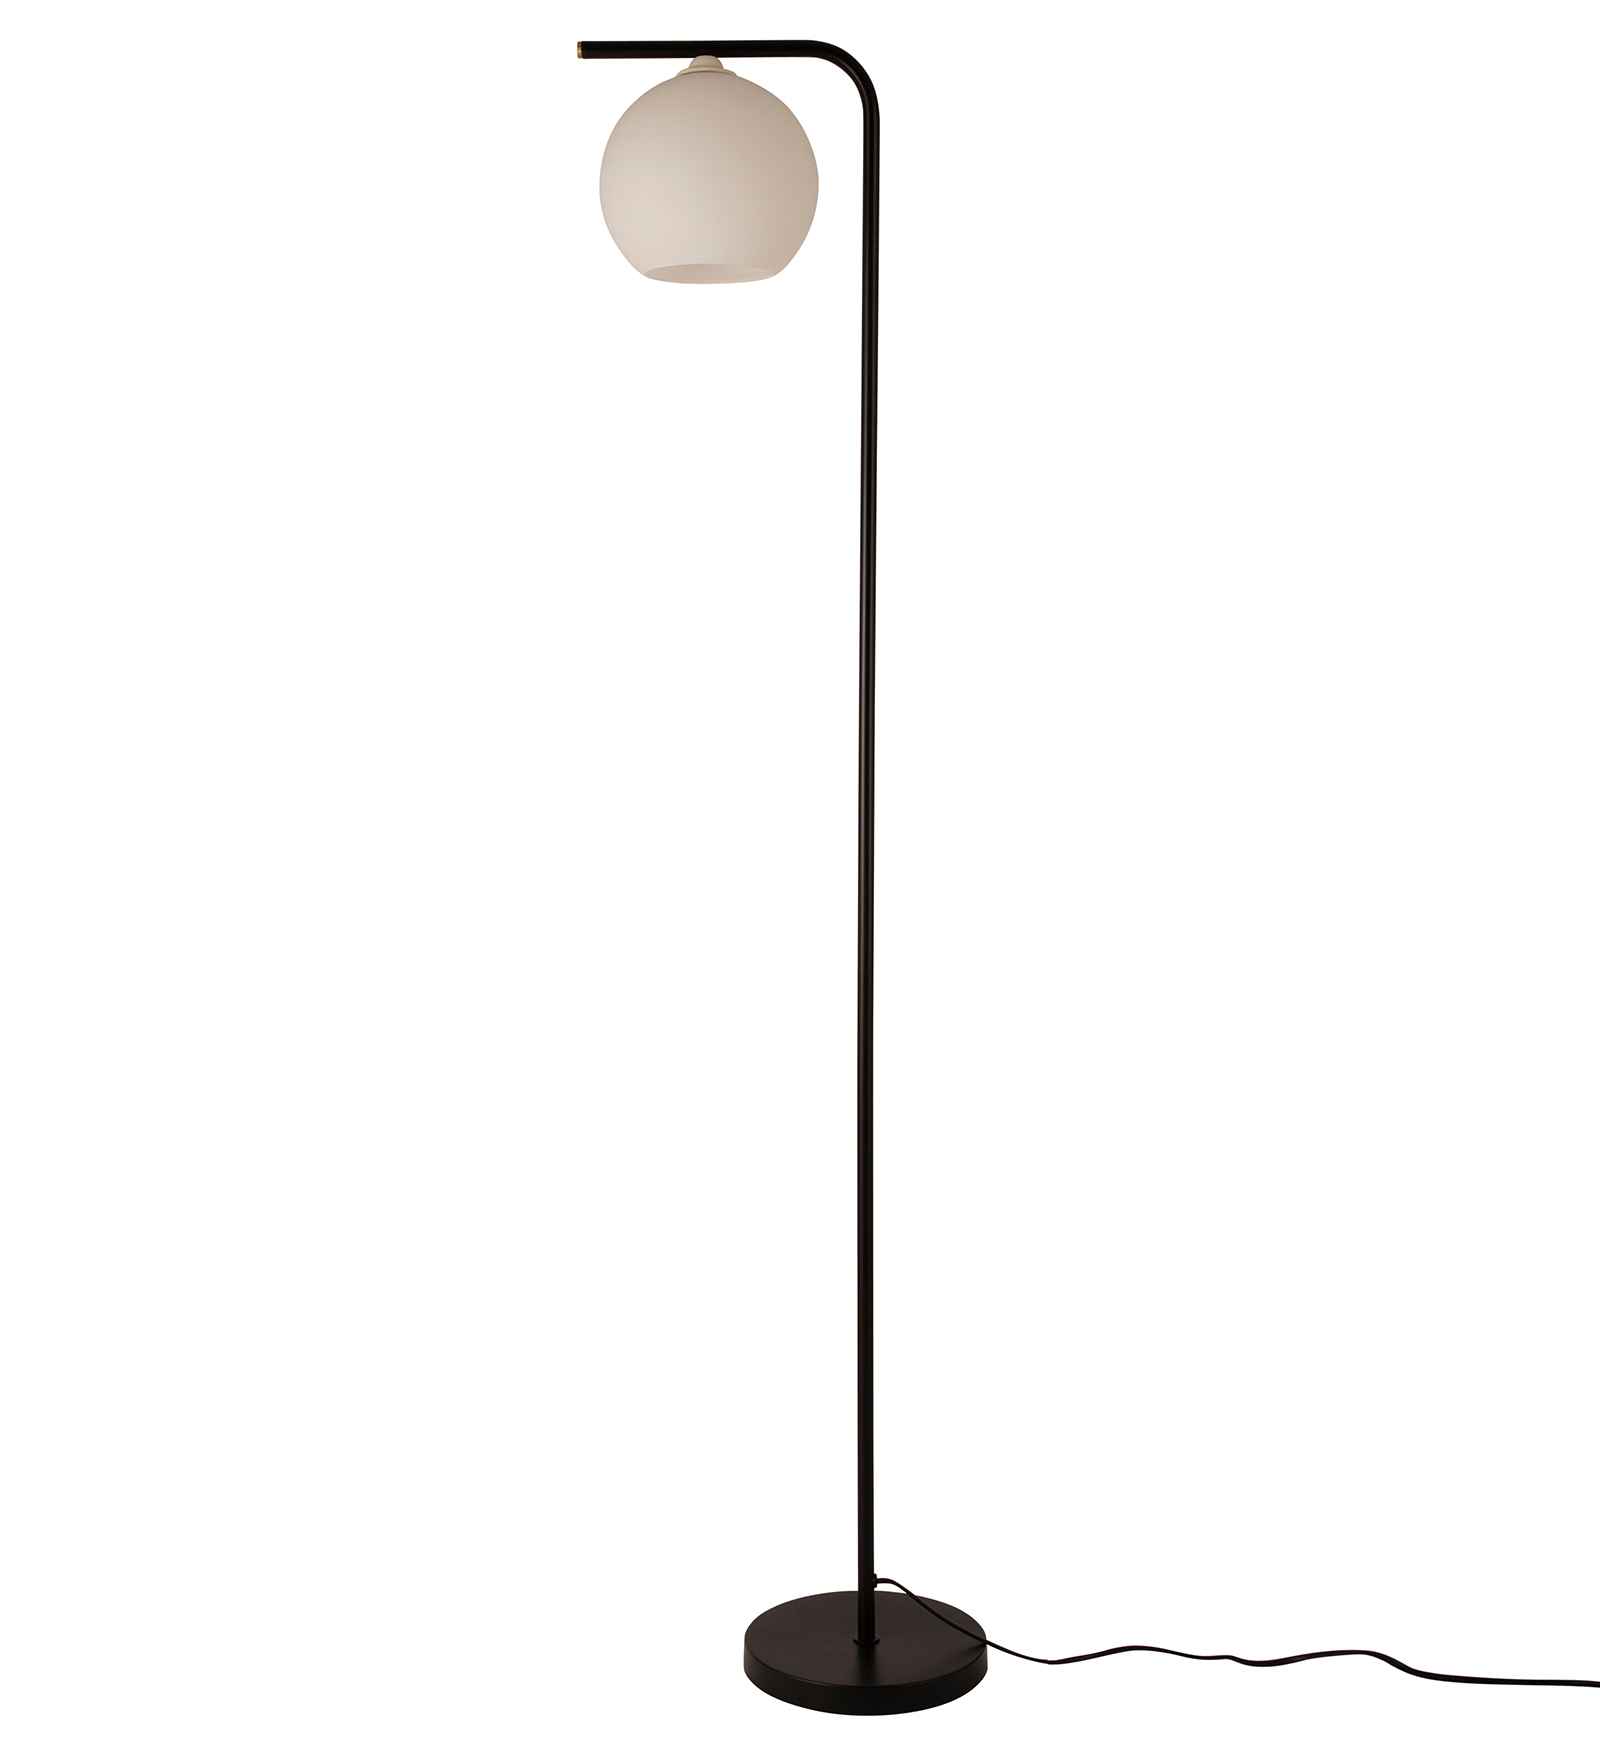 Glass Ball Vertical Floor Lamp